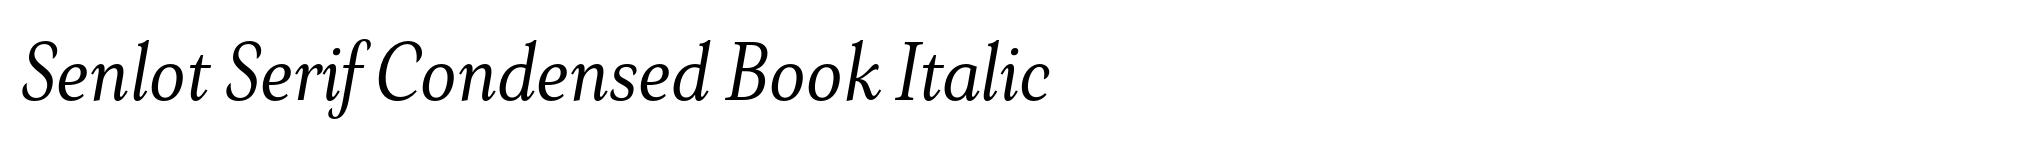 Senlot Serif Condensed Book Italic image